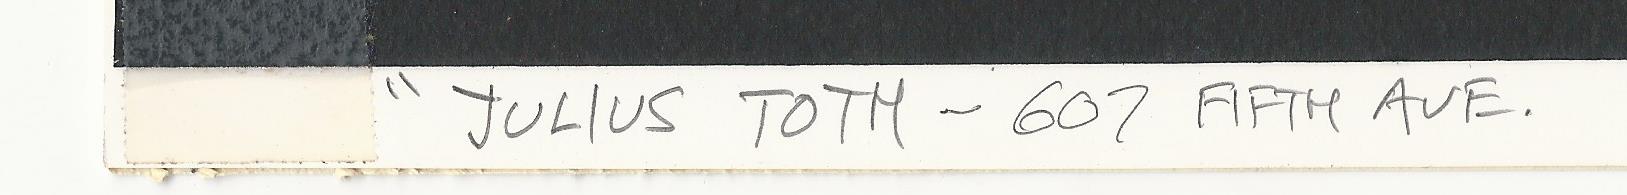 Toth, Julius 4-2021 001 Anschrift